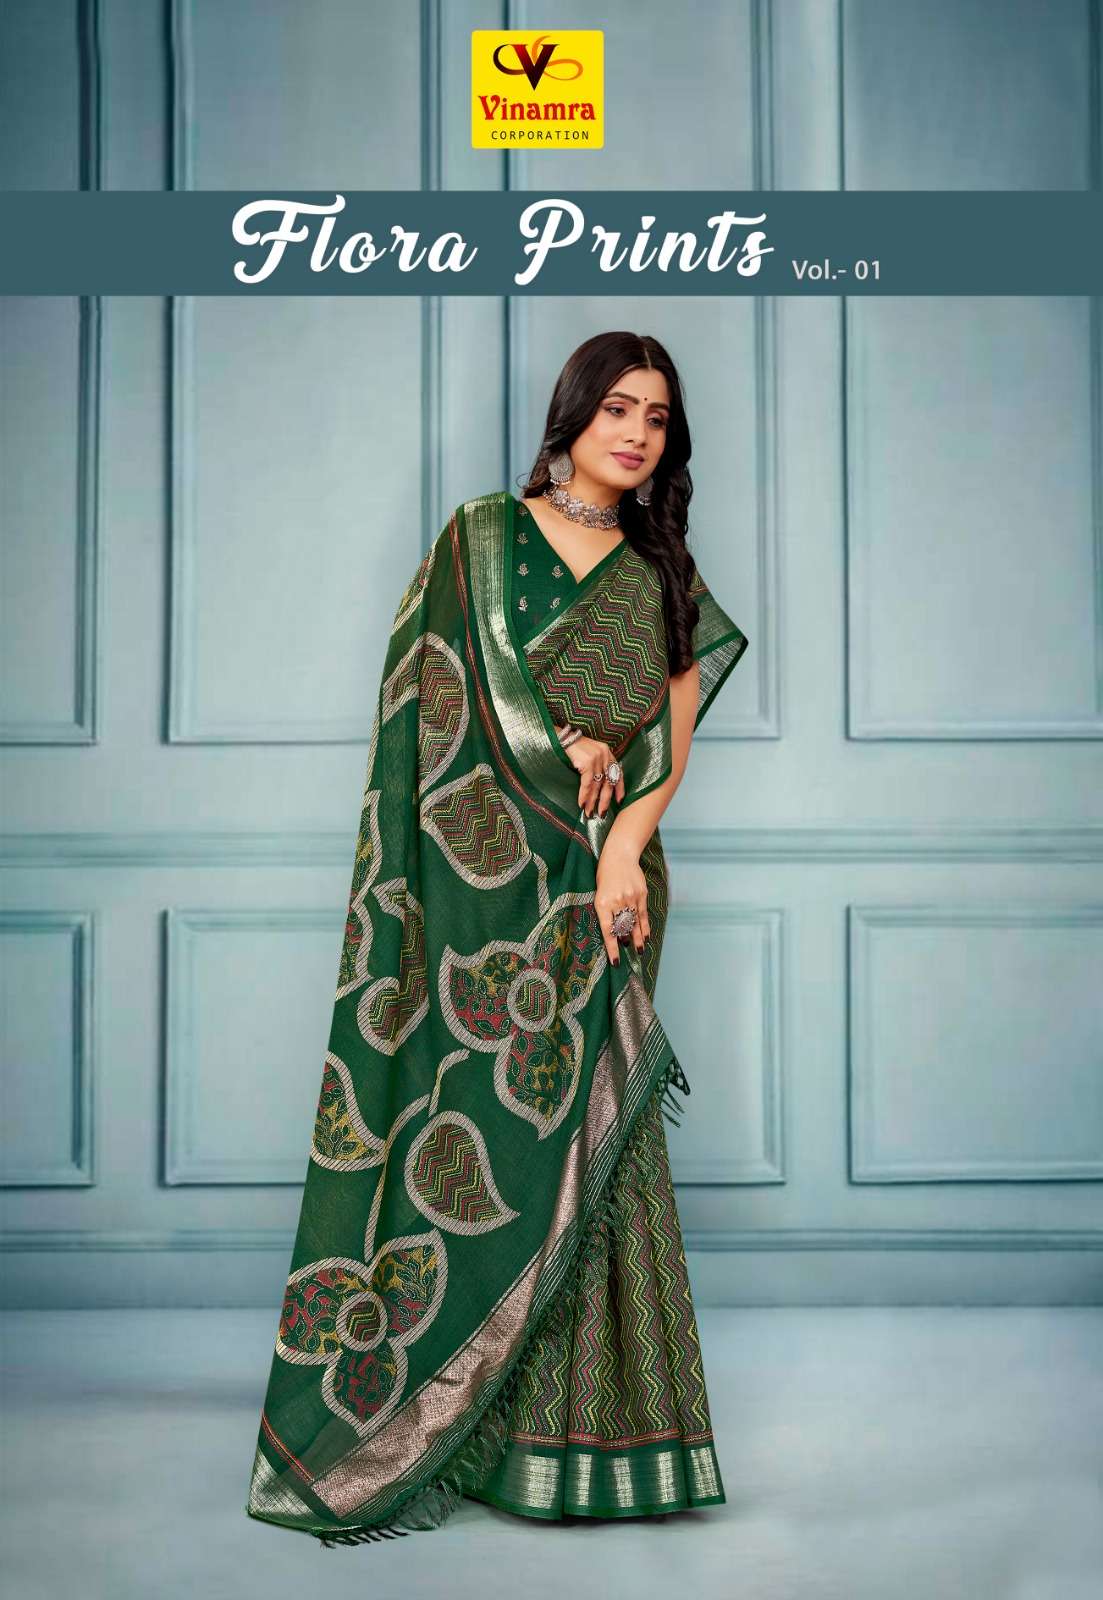 vinamra flora prints vol 1 fancy linen amazing saree collection 